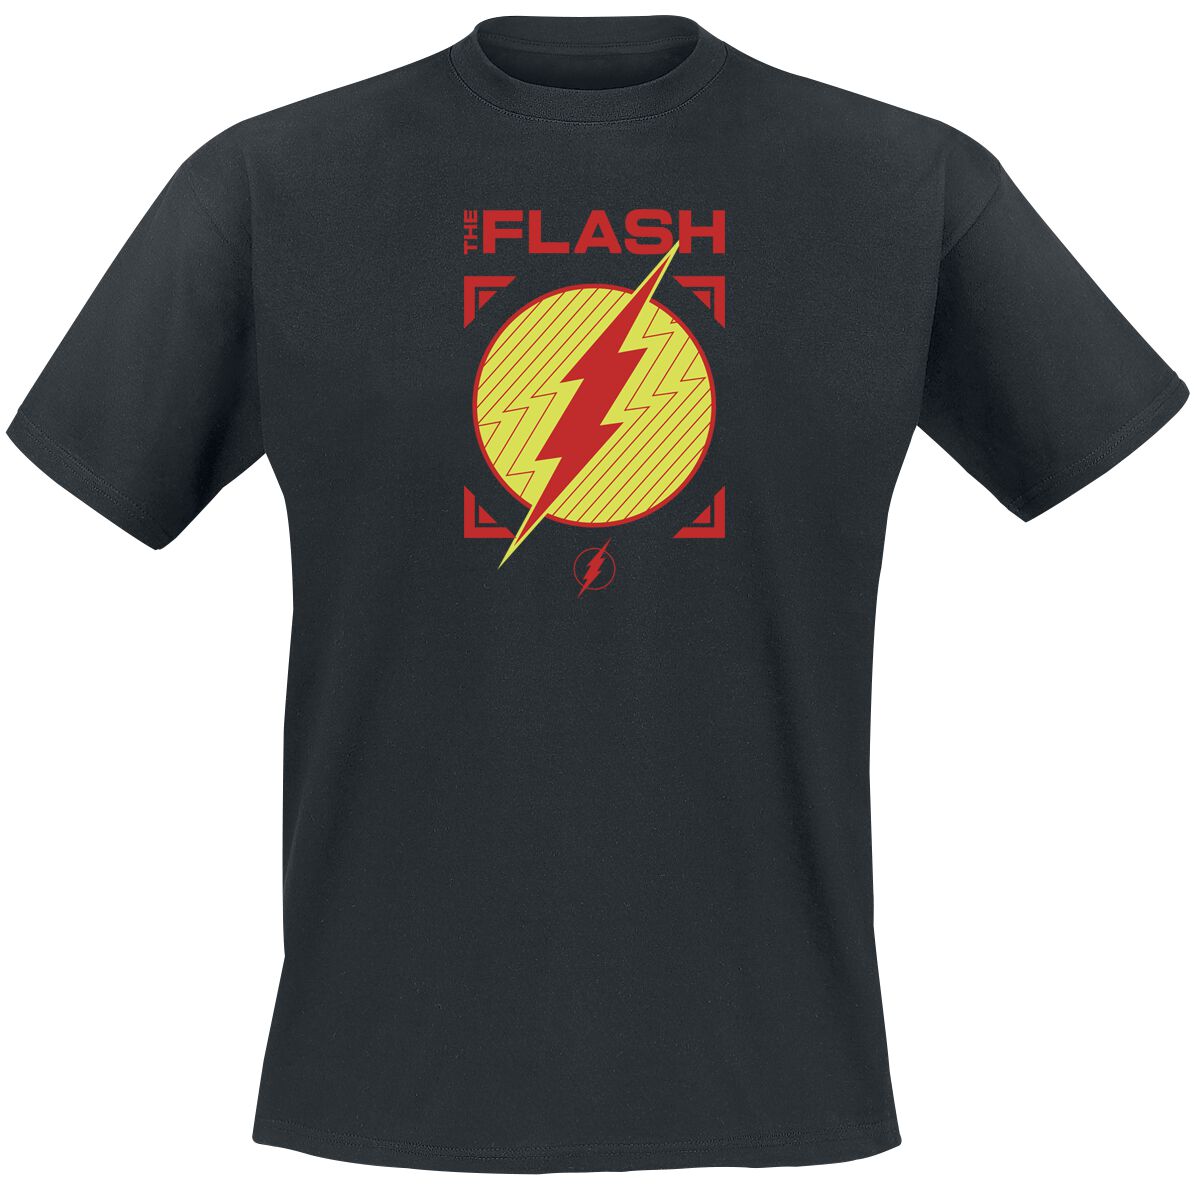 The Flash - DC Comics T-Shirt - Flash - Central City All Stars - S bis XXL - für Männer - Größe XXL - schwarz  - EMP exklusives Merchandise!